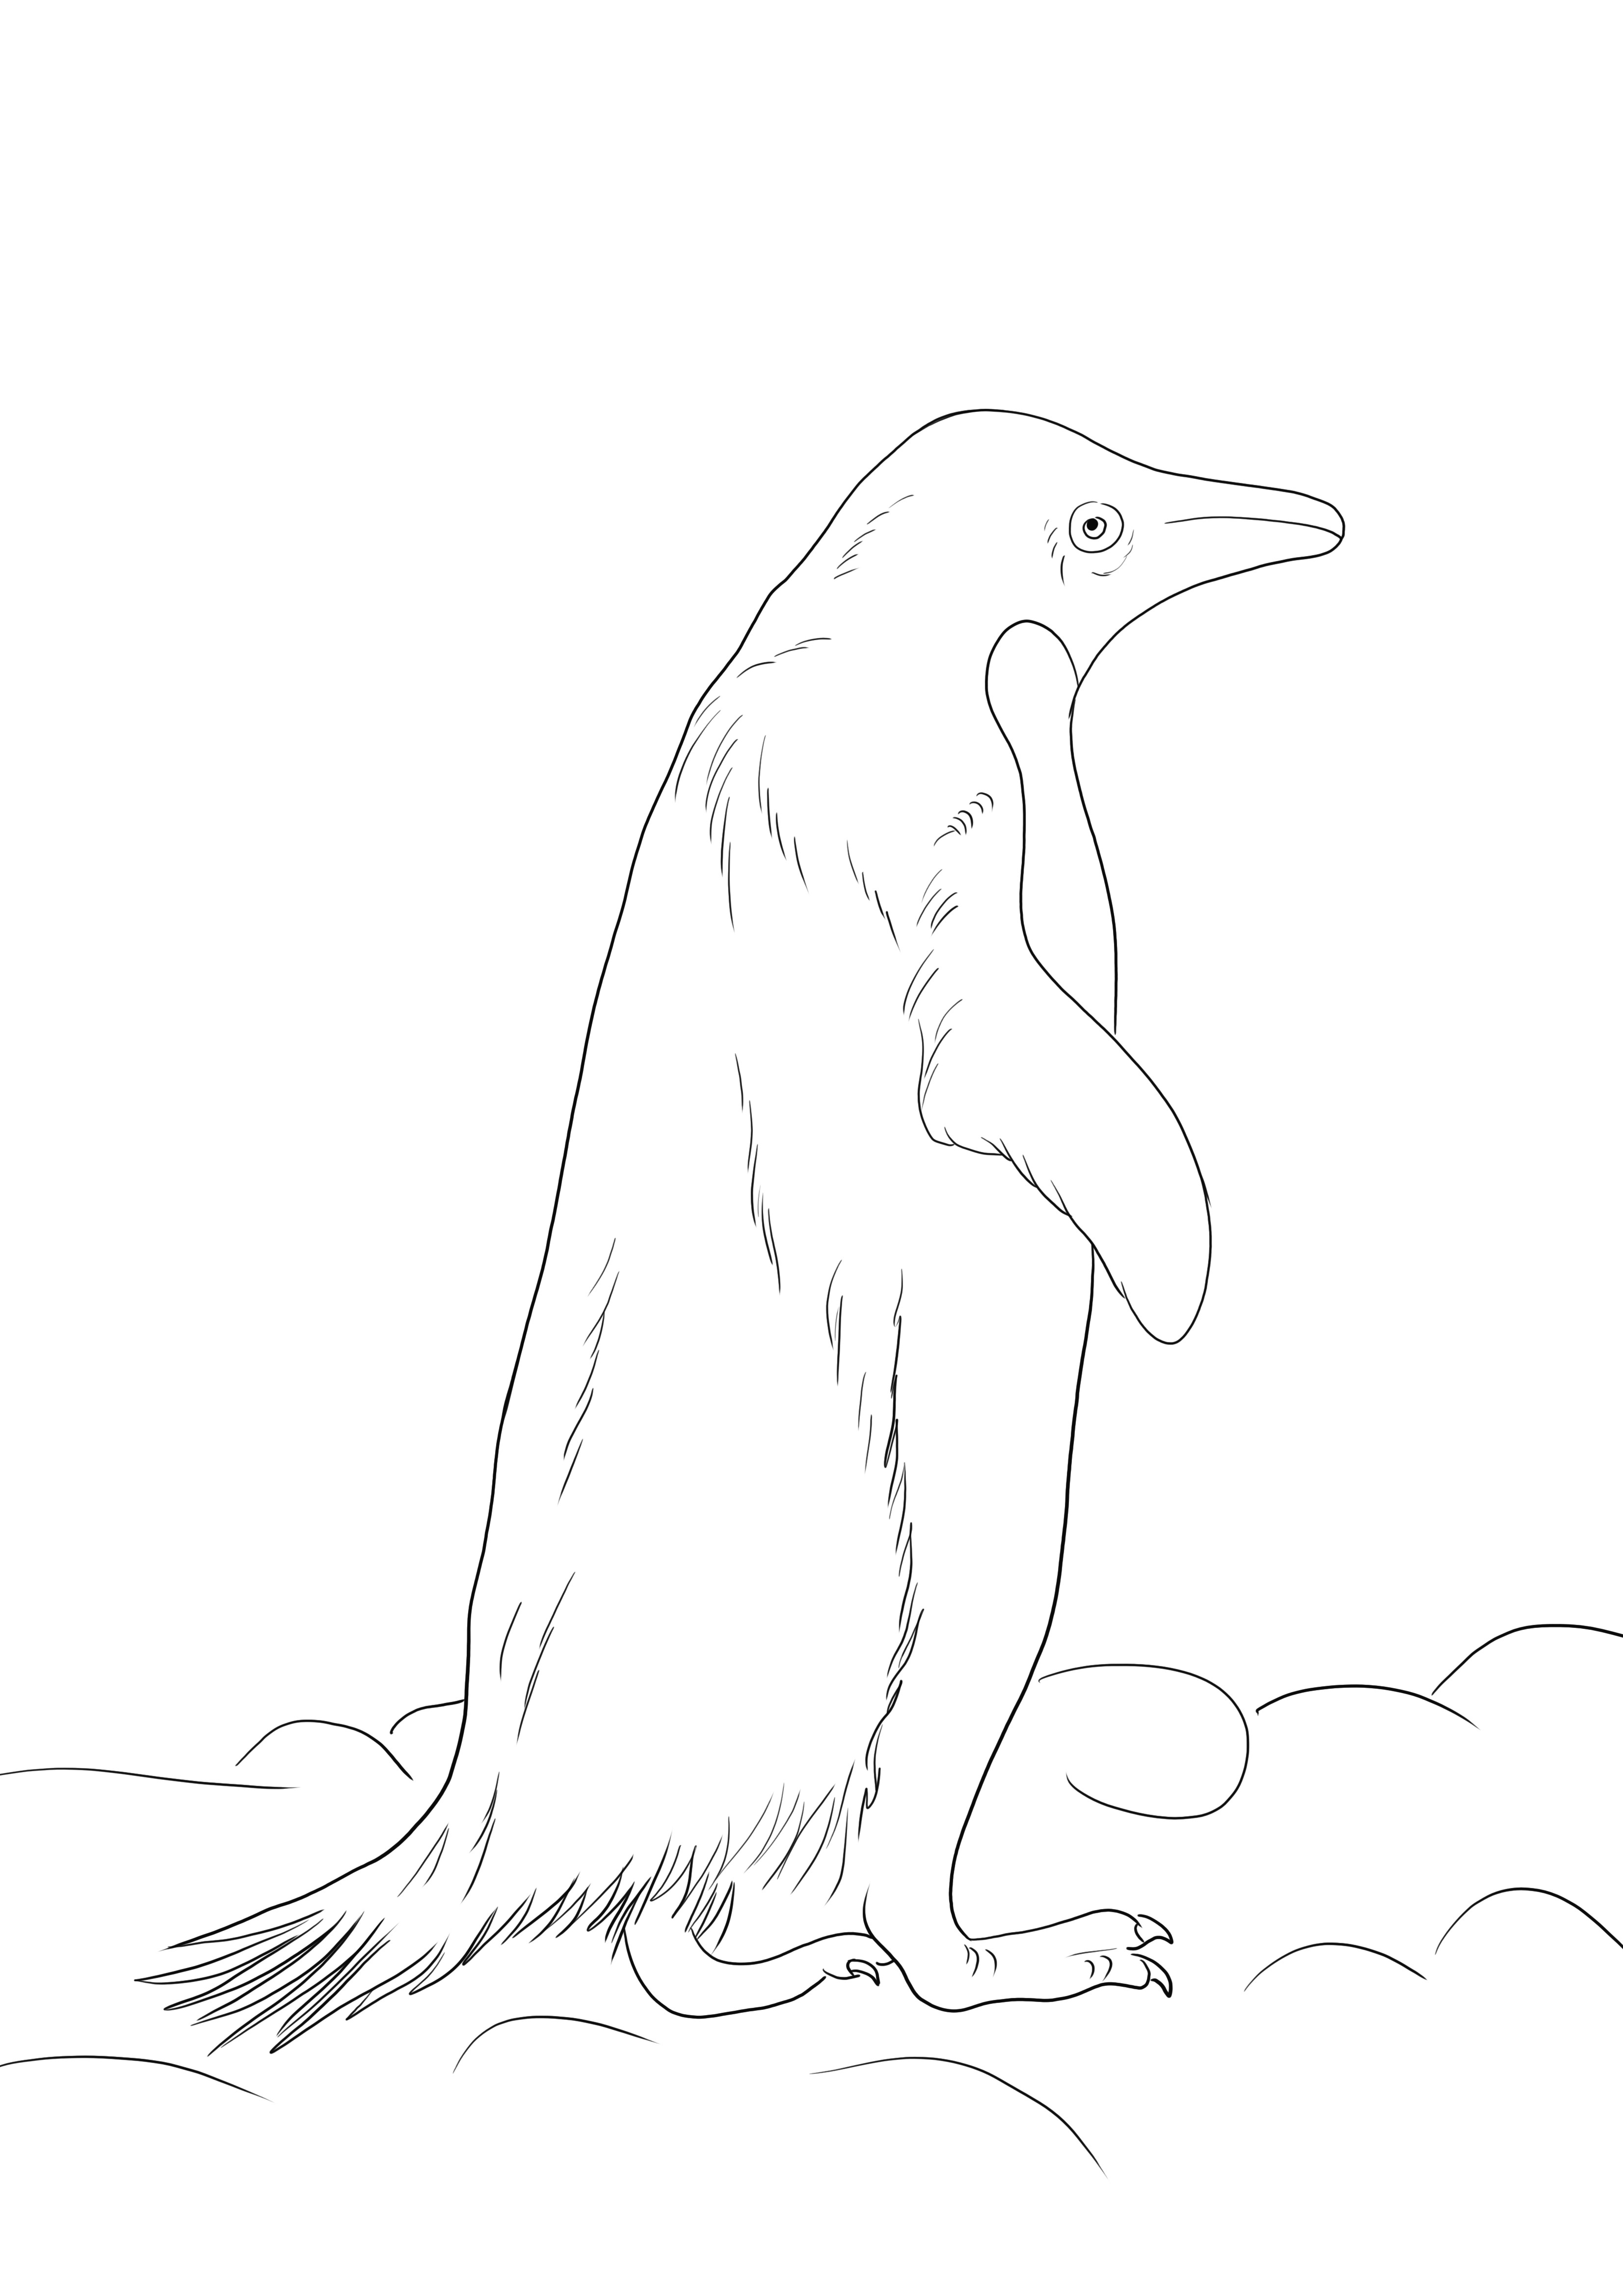 Pagina de colorat gratuit Pinguinul Adelie pentru a imprima sau a salva pentru a le colora ulterior